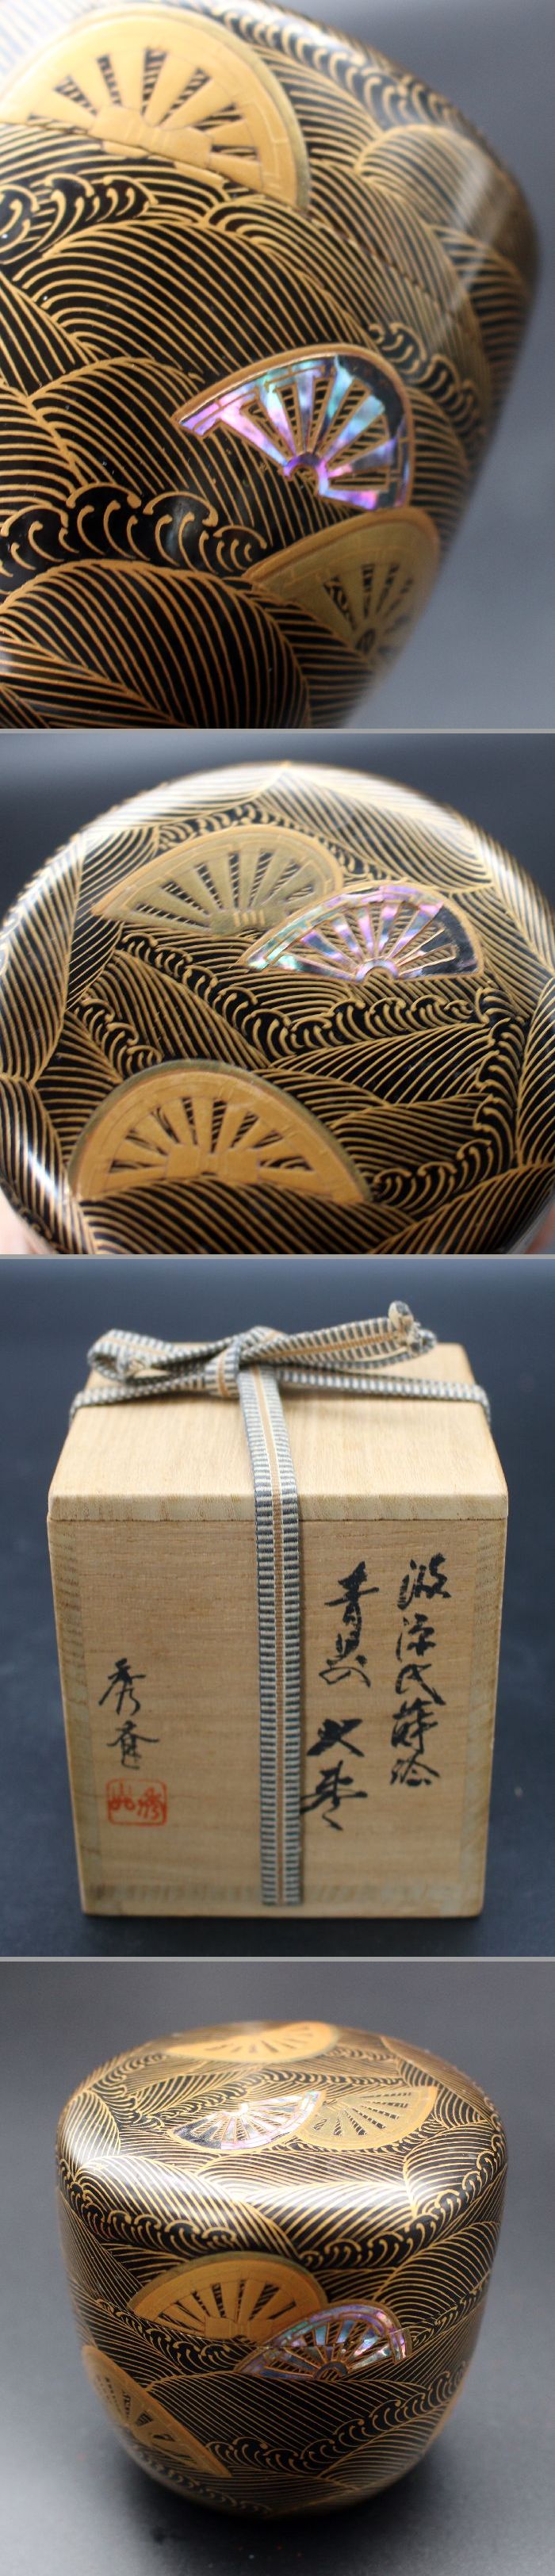 棗木製塗 漆芸筒 小箱 茶道具